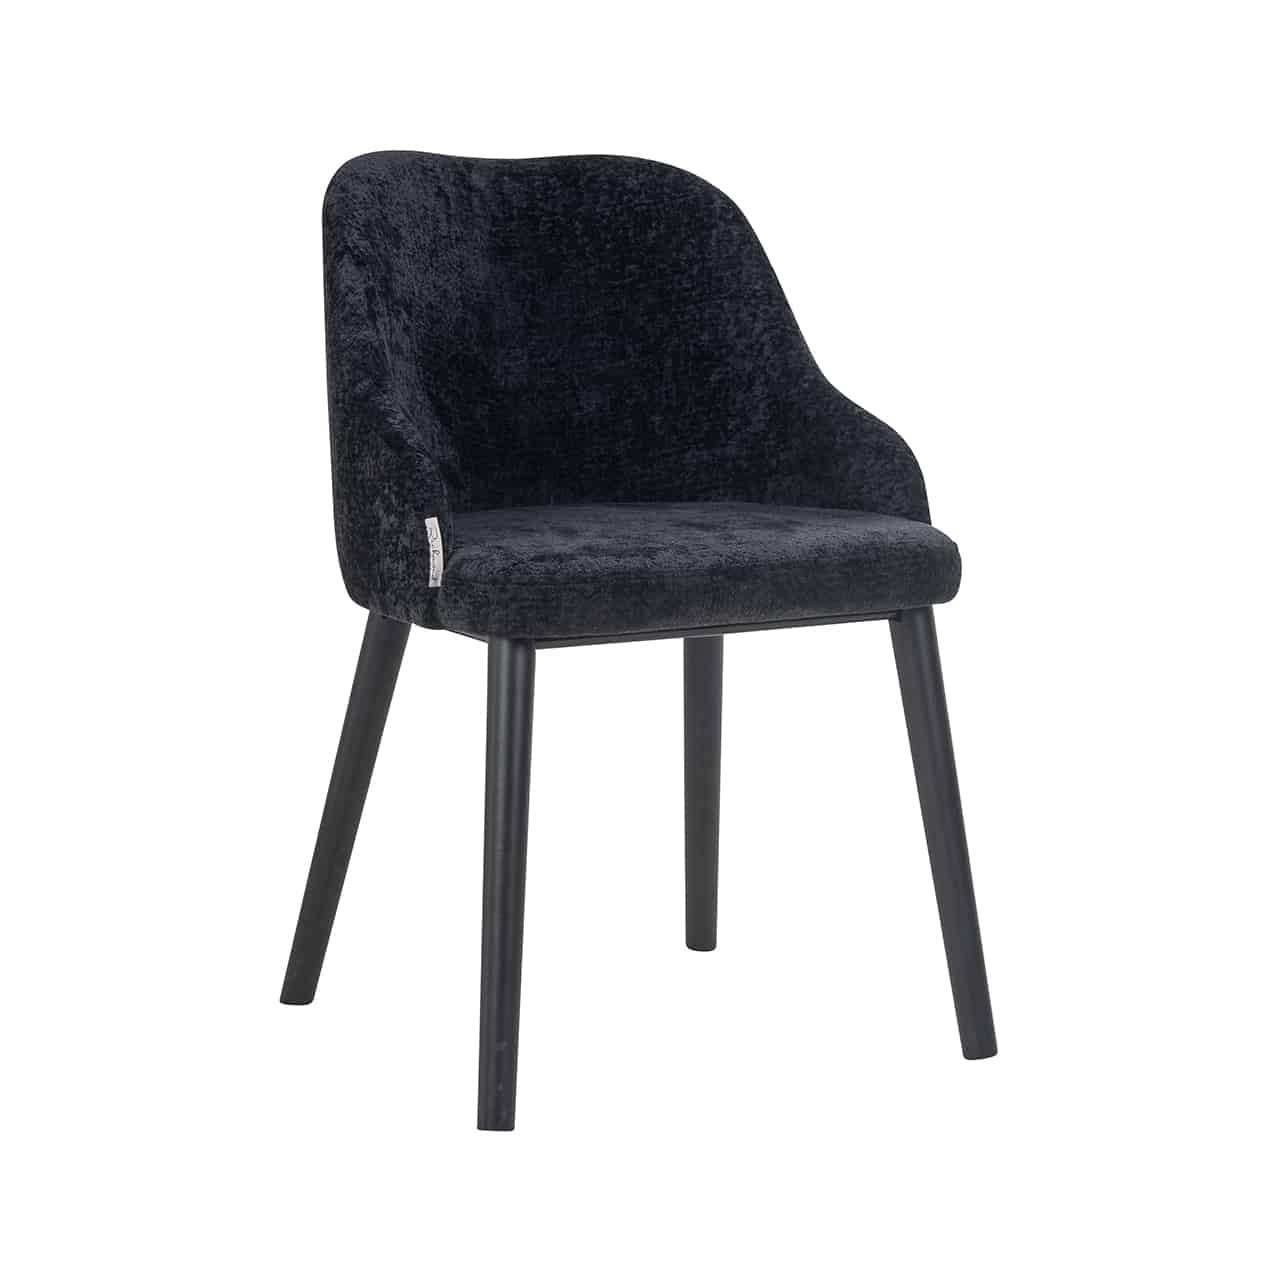 Vollpolsterstuhl mit schwarzem, flauschigem Chenille bezogen; runde Rückenlehne mit angedeuteten Armstützen; kräftige, leicht nach außen stehende, schwarze Beine.